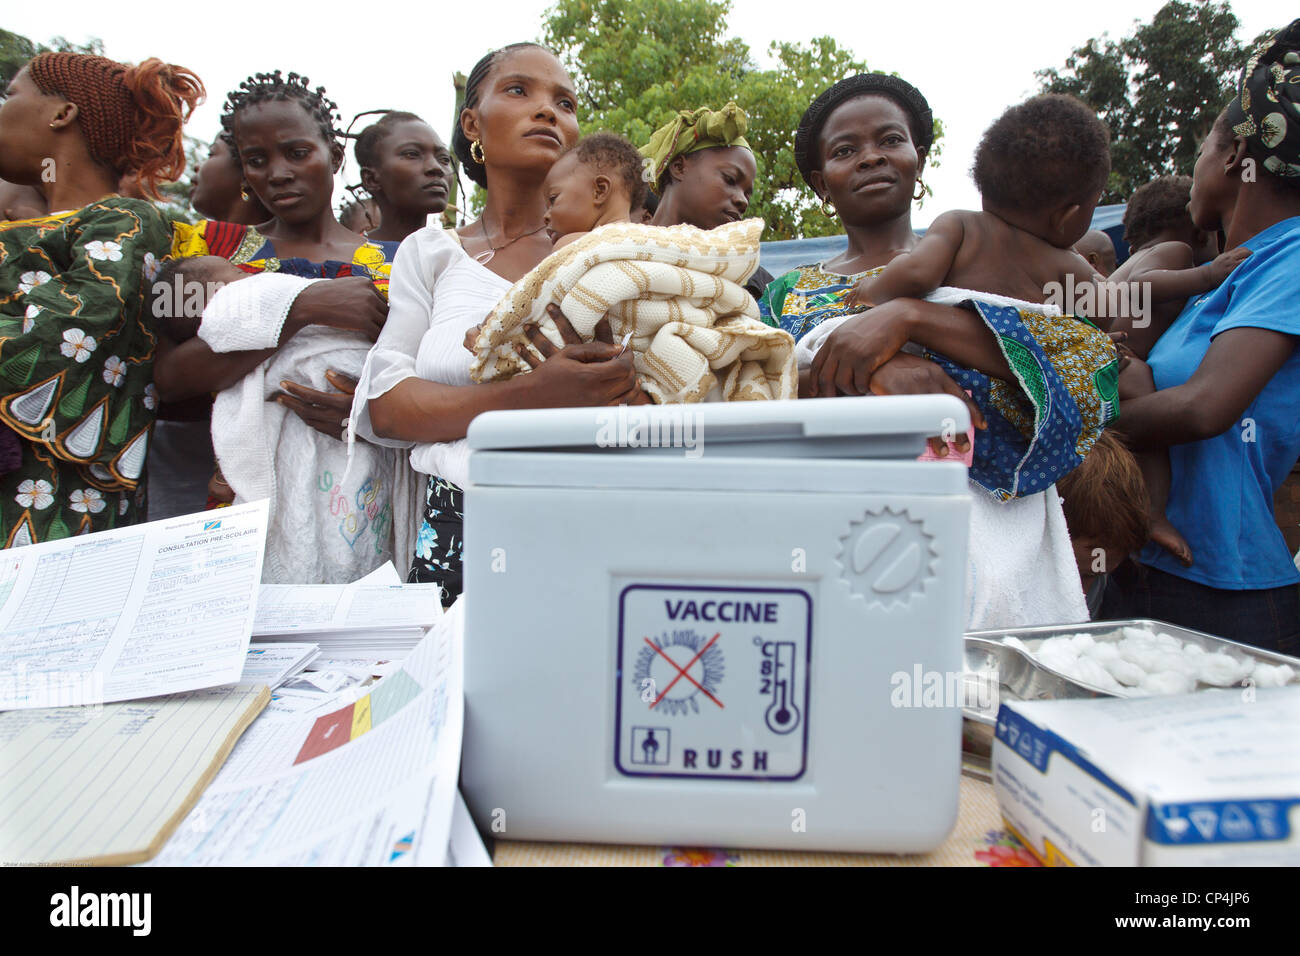 Les mères attendre pour vacciner leurs enfants au cours de la vaccination de routine à l'Nyunzu centre de santé dans la ville de Nyunzu, RDC Banque D'Images